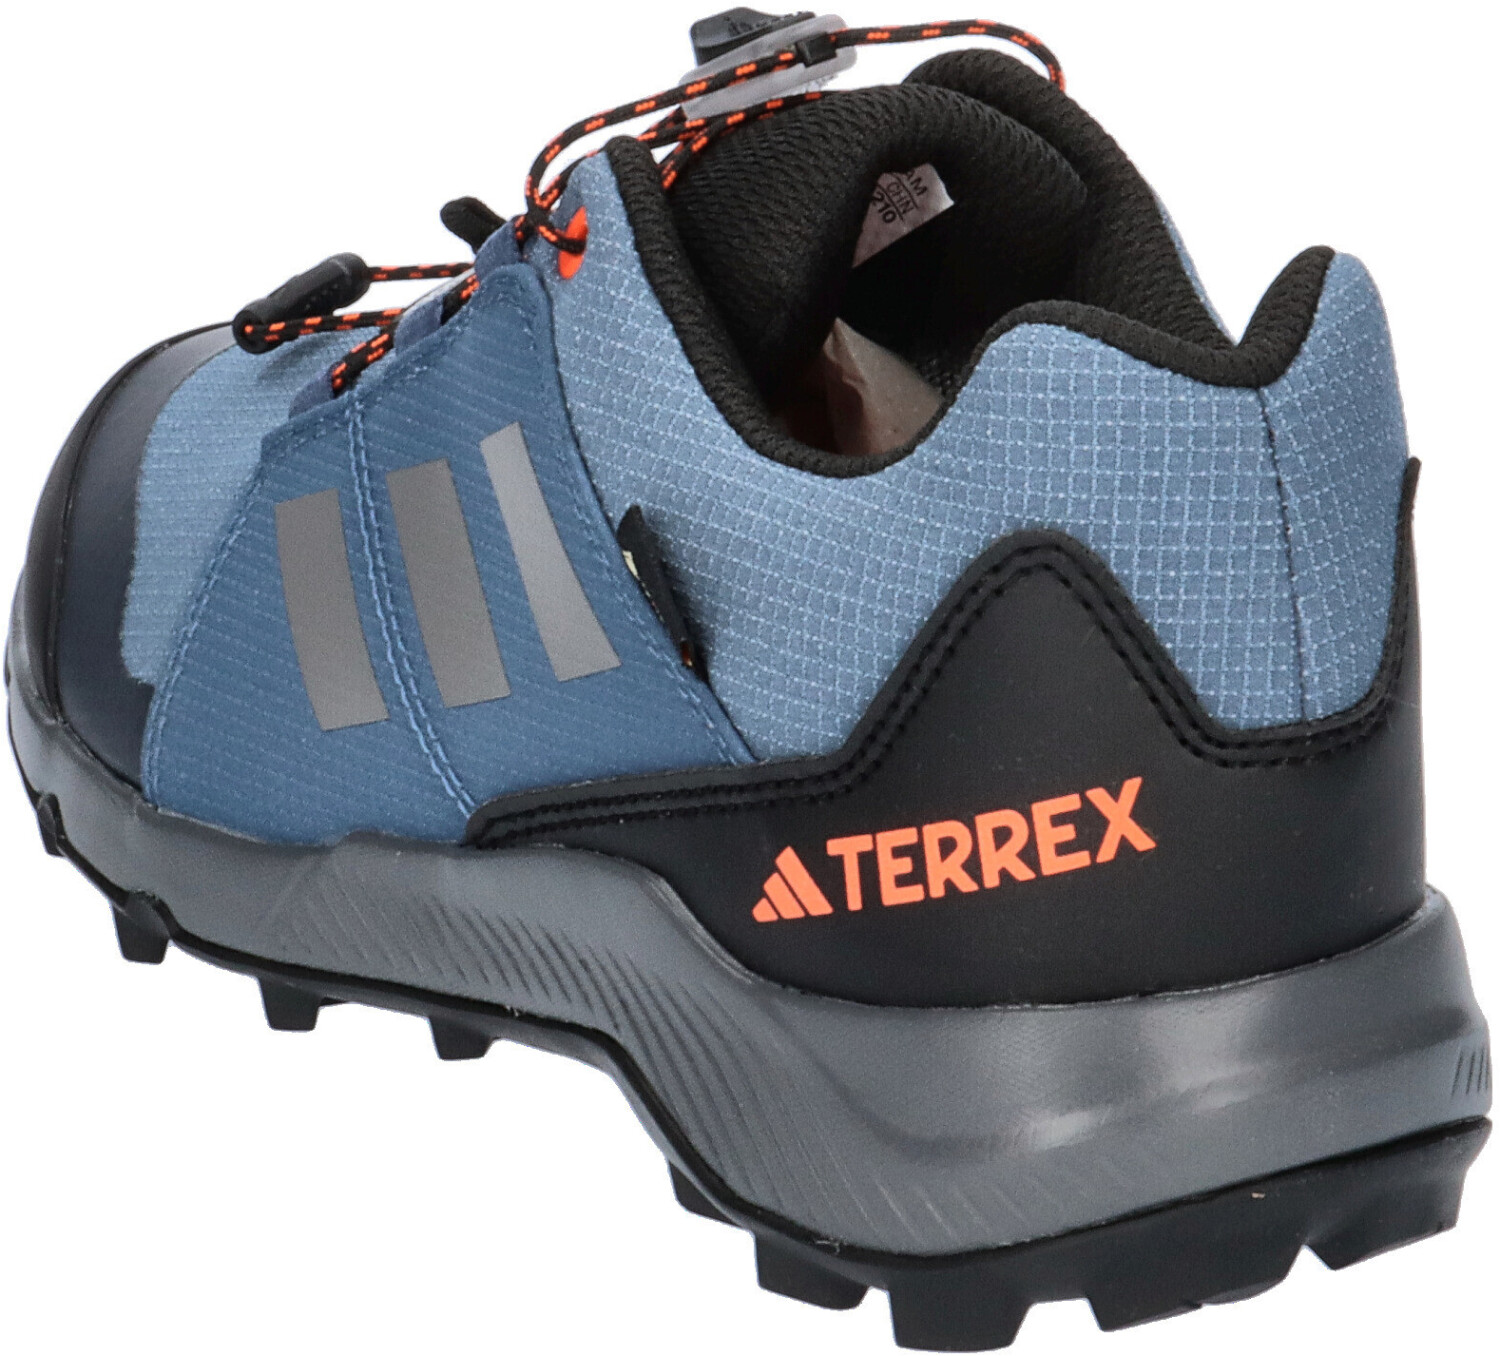 Gore-Tex 59,95 bei Preisvergleich orange ab | steel/grey Adidas Kids € Terrex three/impact wonder Hiking